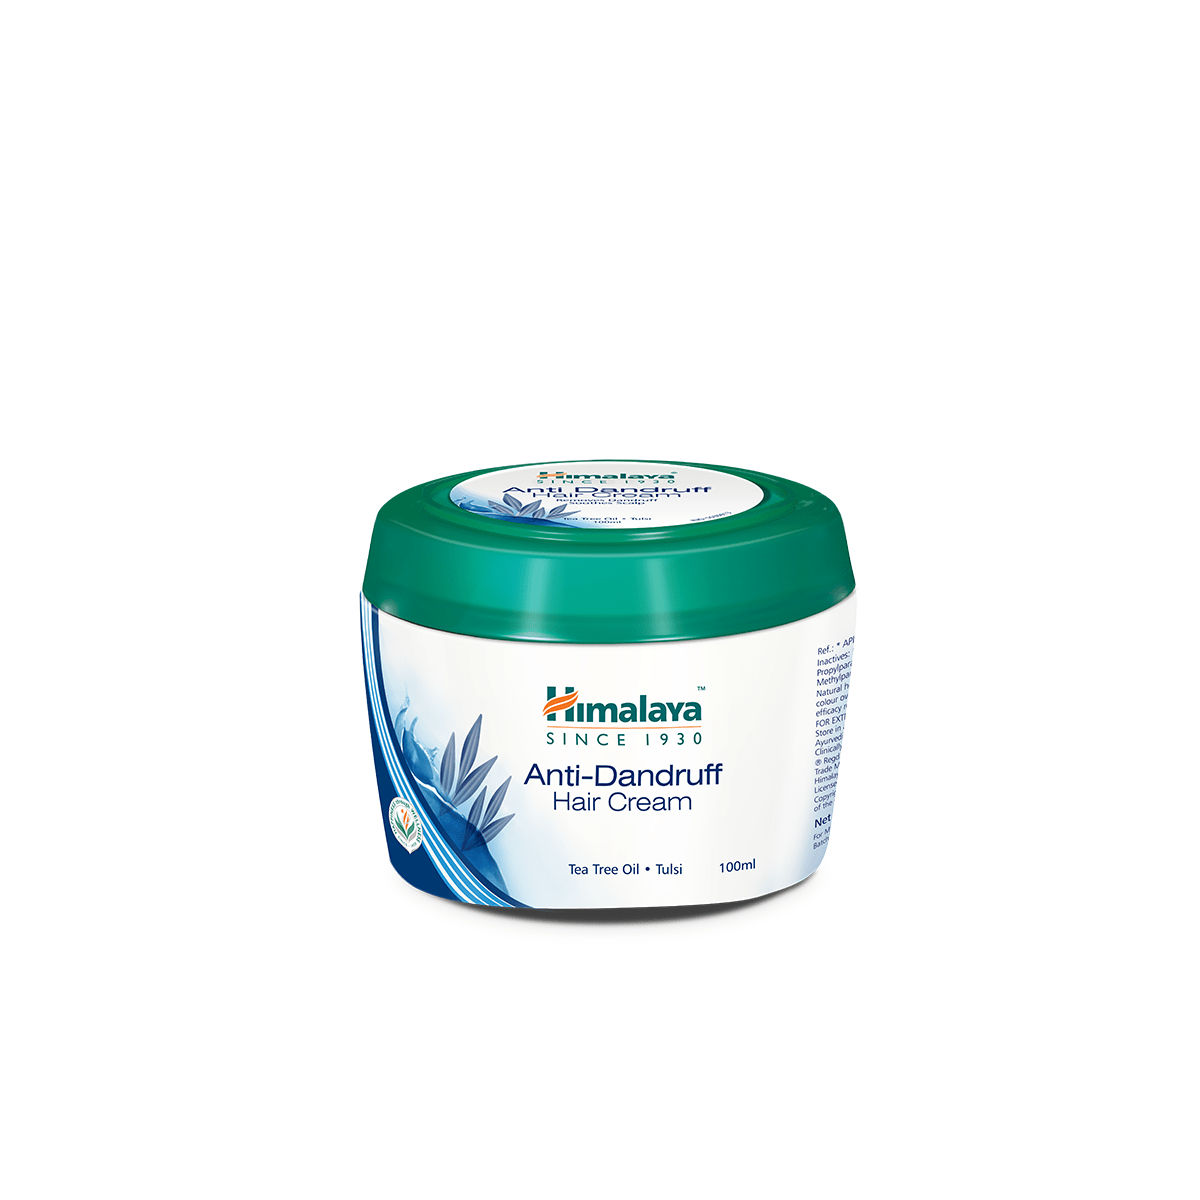 Himalaya Anti-Dandruff Hair Cream With Tea Tree Oil & Tulsi